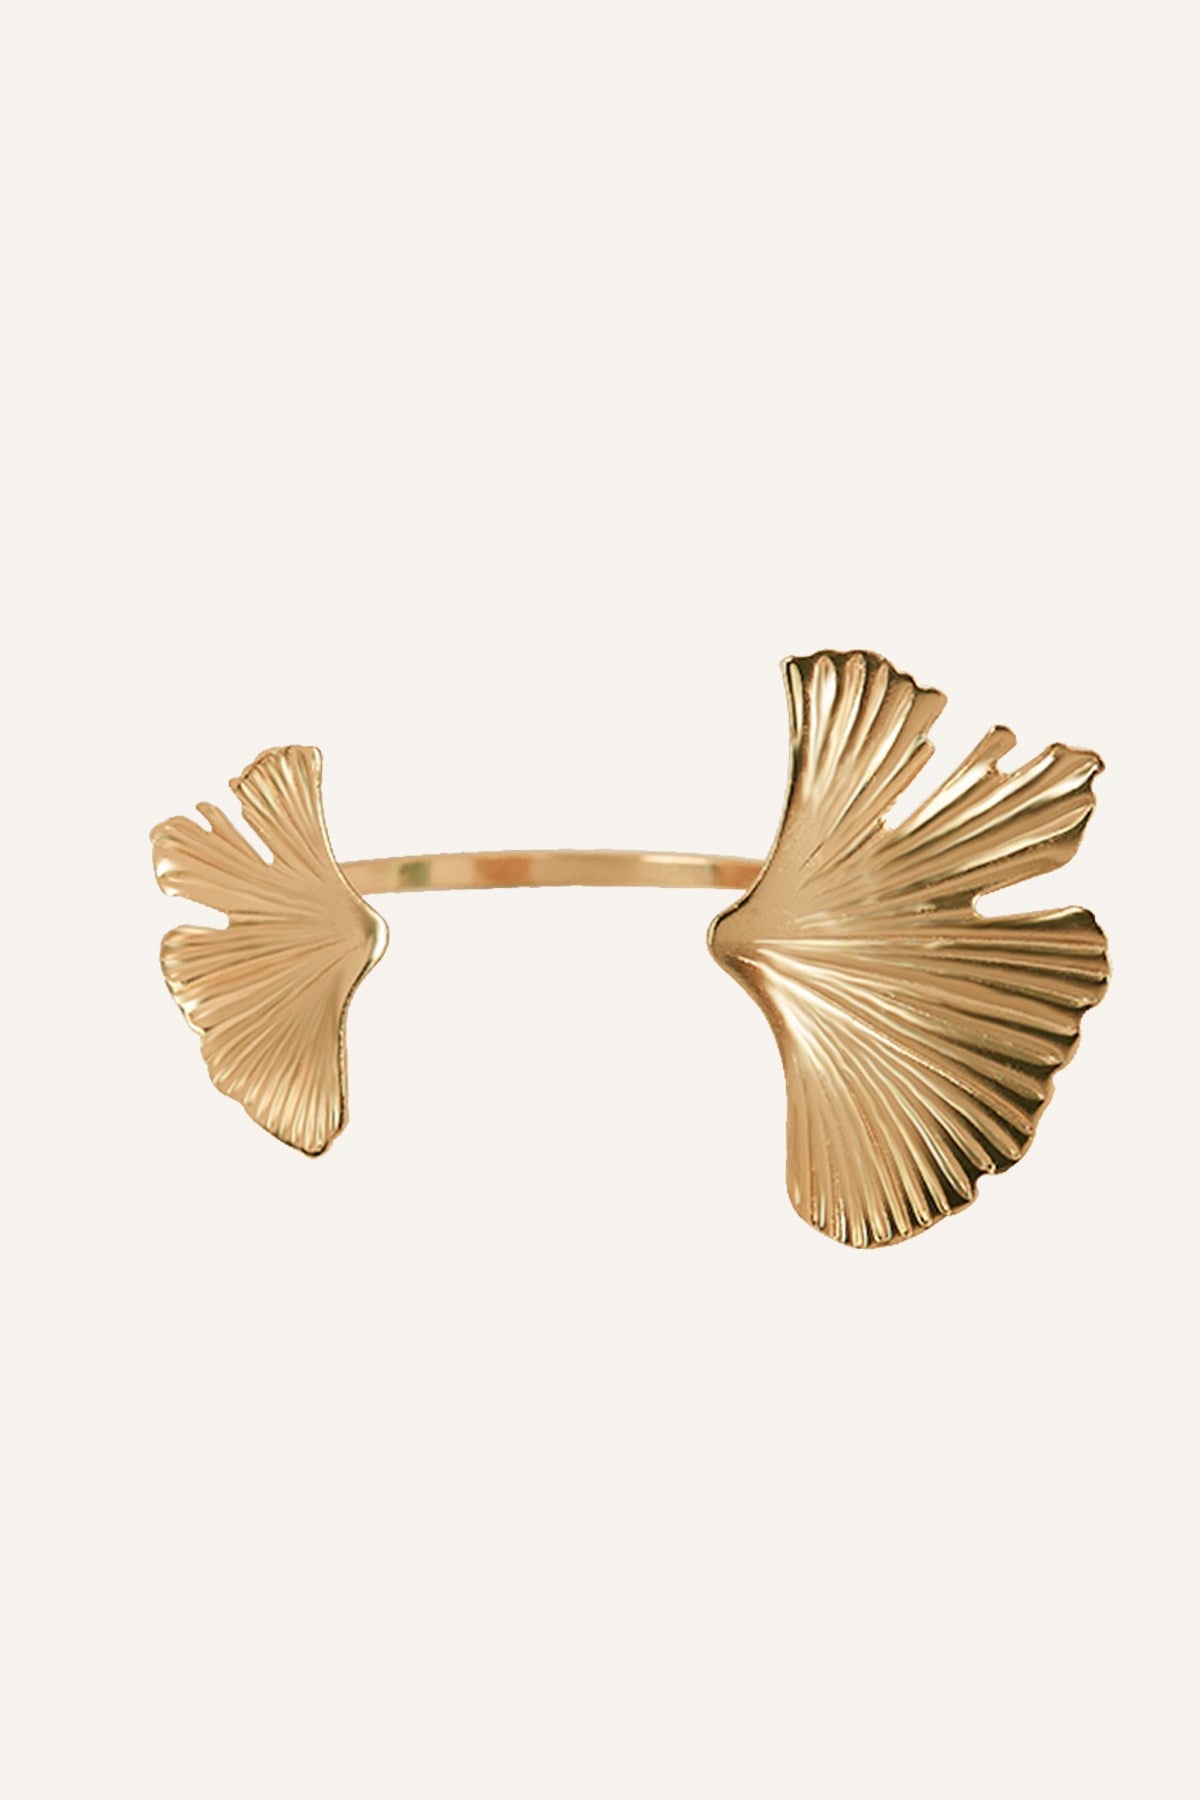 Ginkgo Biloba Leaf Bracelet Gold